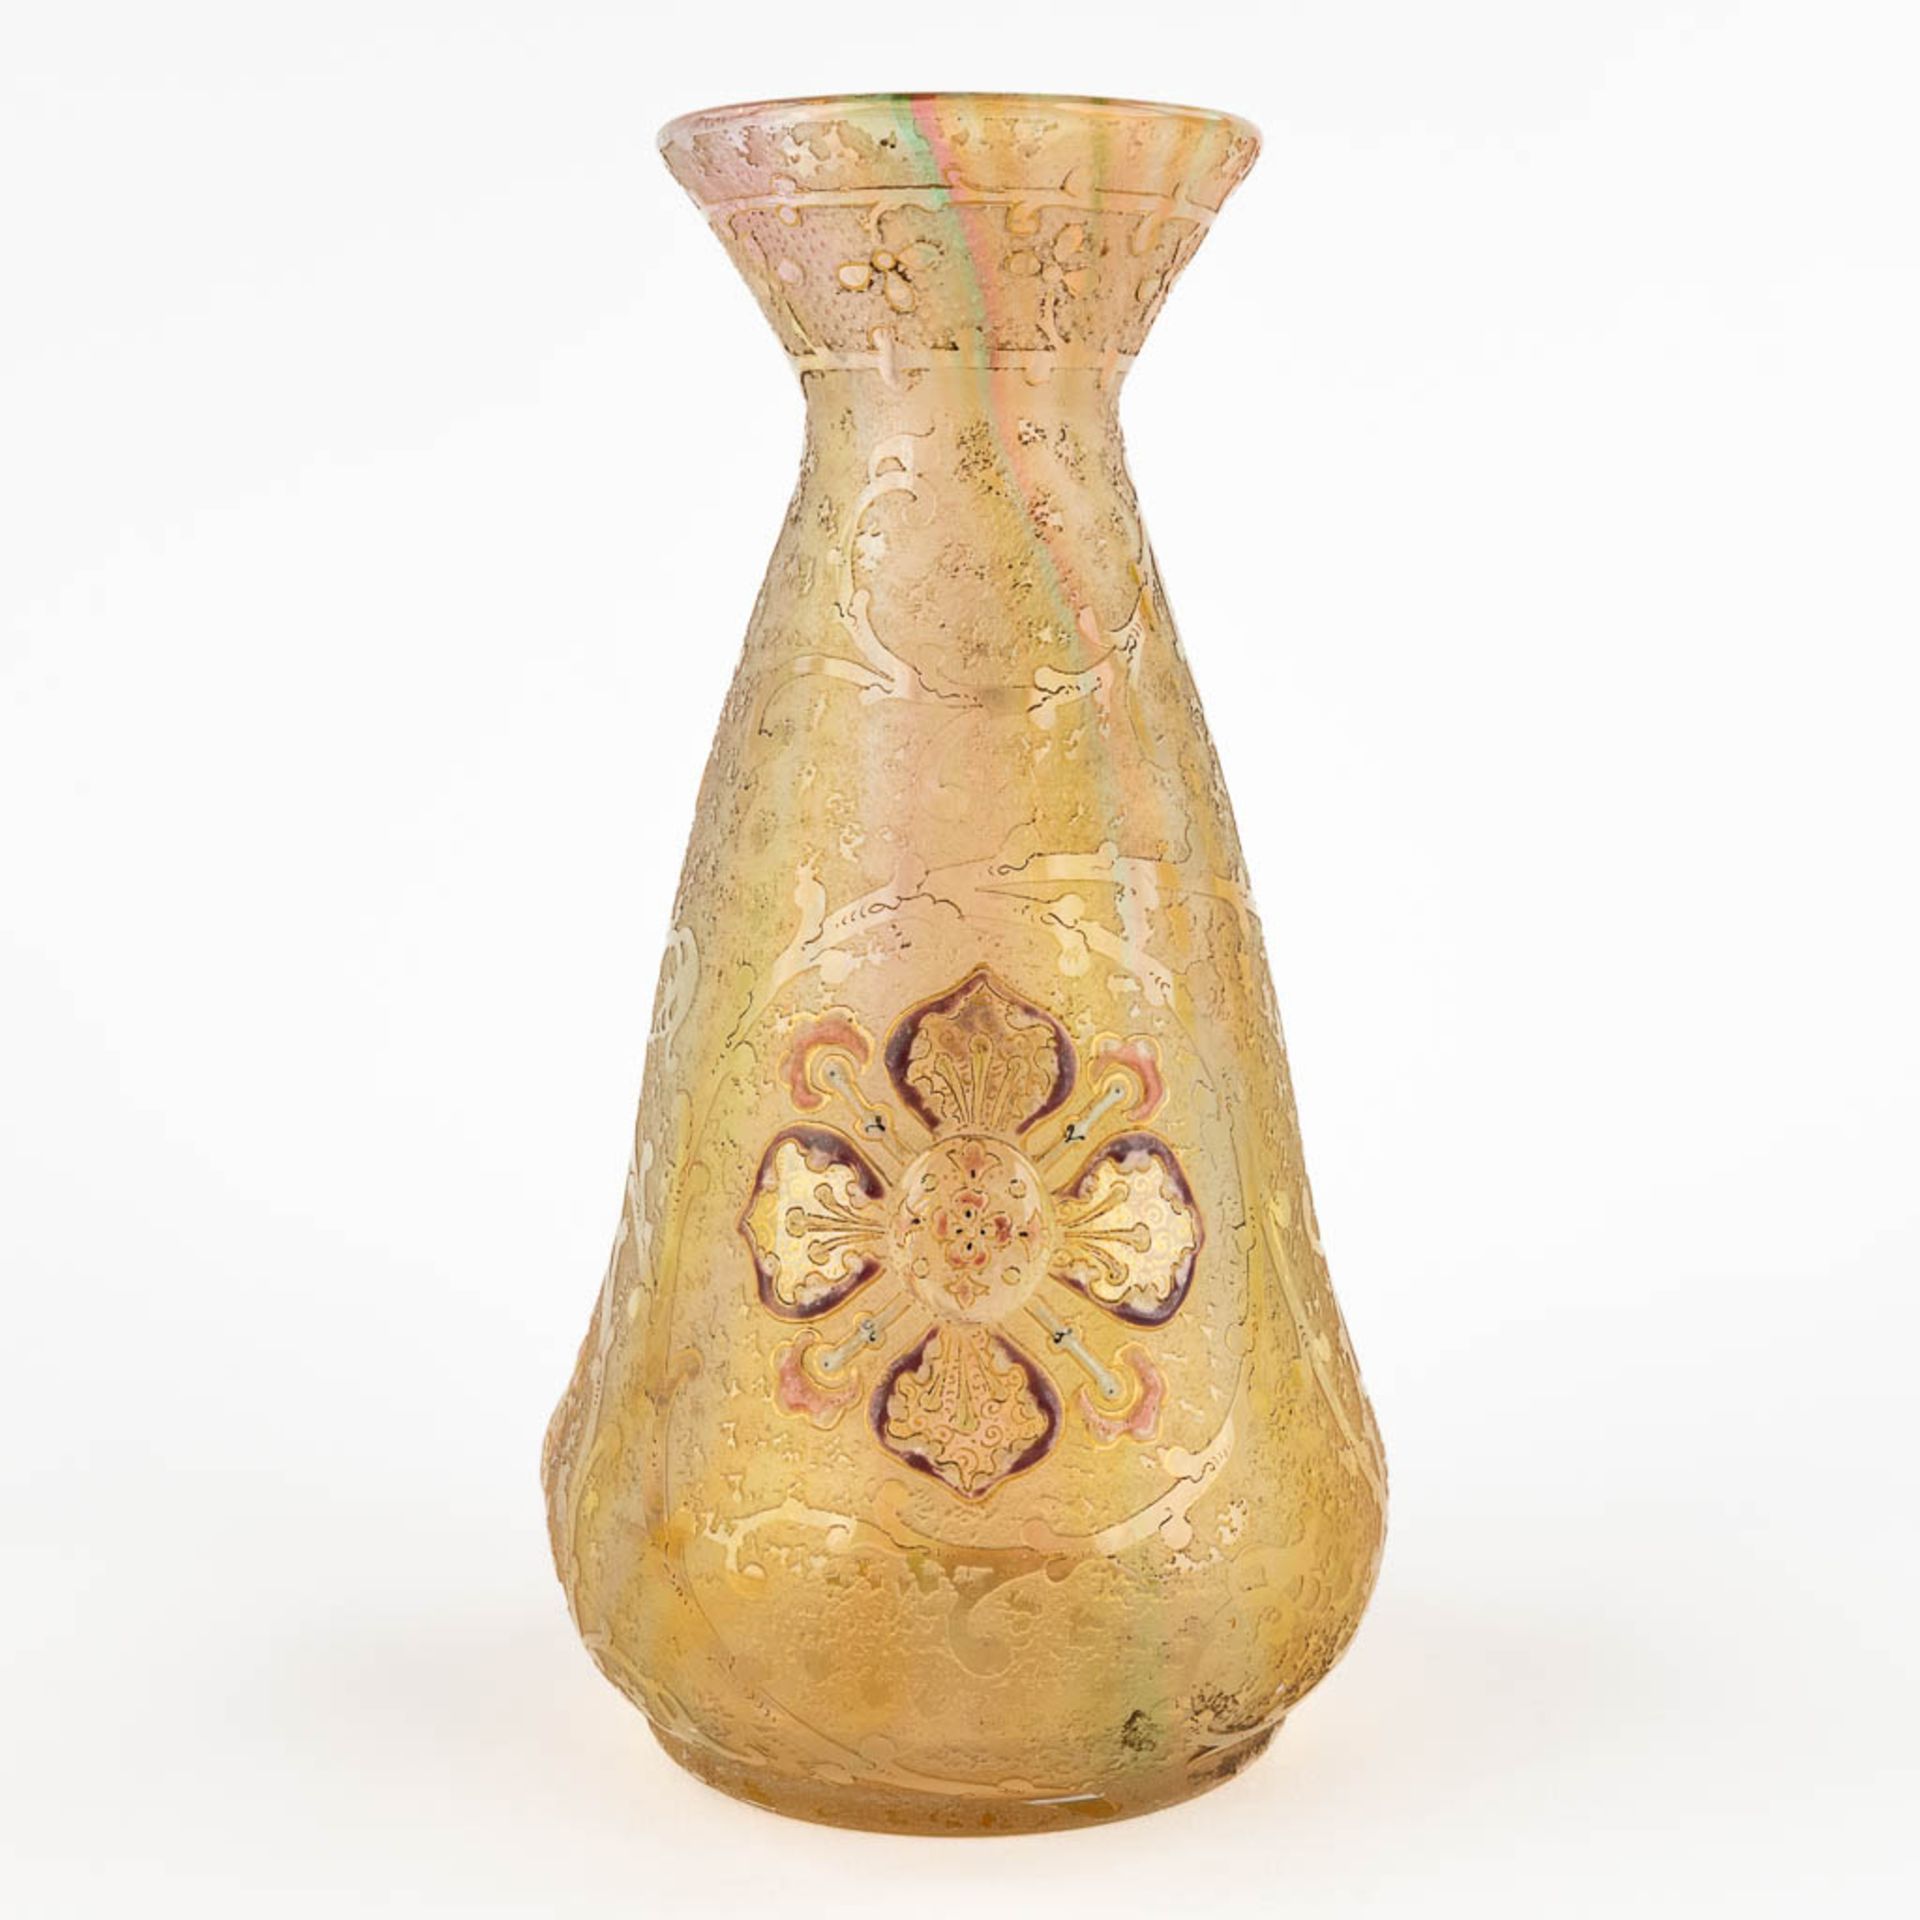 Antonin DAUM (1864-1930) 'Fleurons et rinceaux', a glass vase, Daum-Nancy, circa 1892-1893. (H:20 x